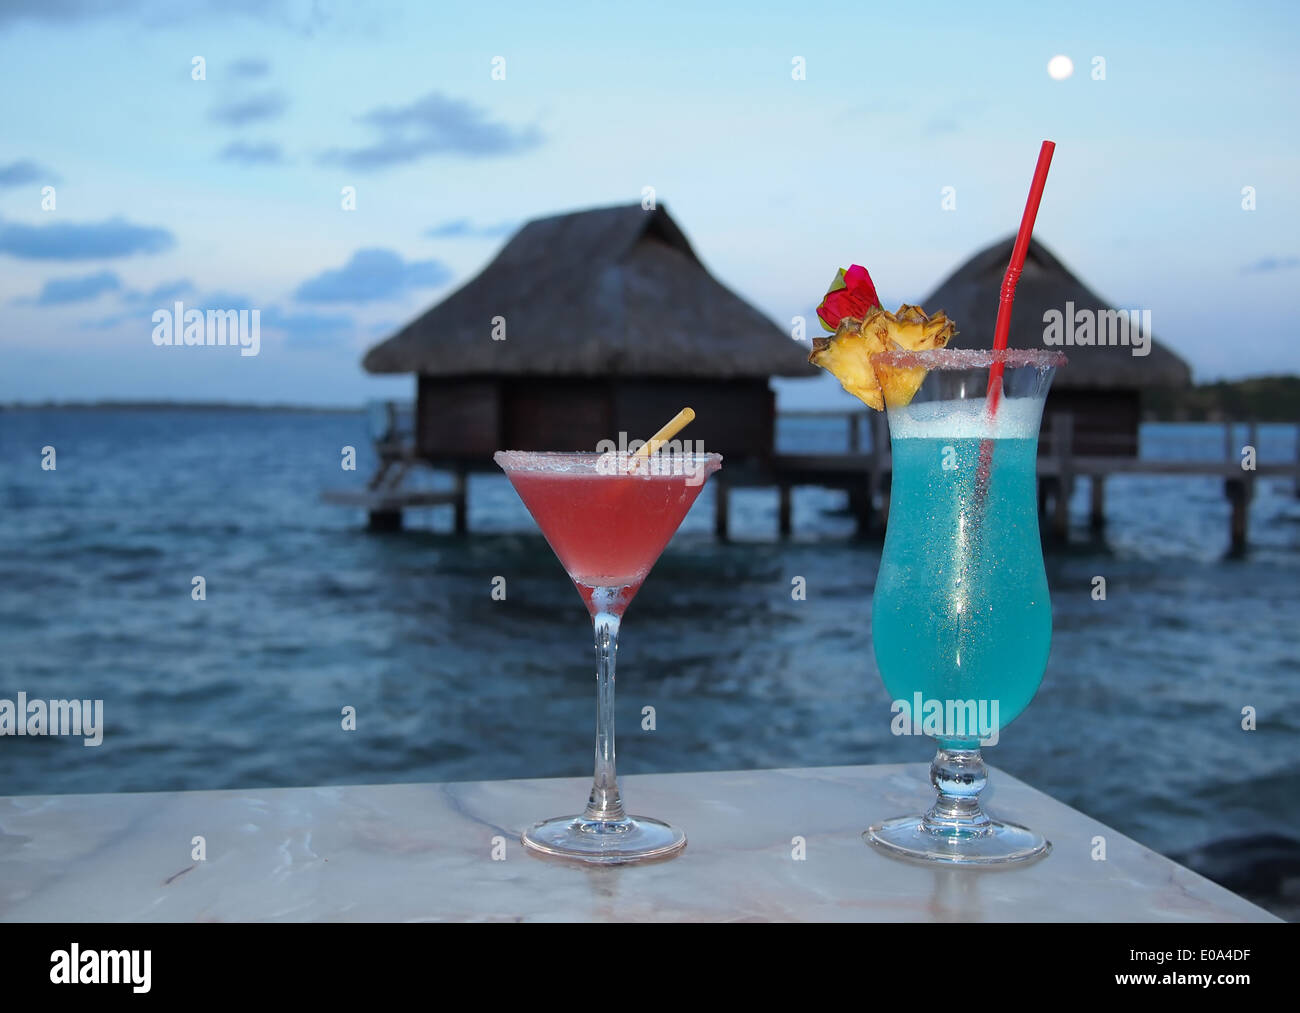 De miel. Deux cocktails sur une table au crépuscule avec en arrière-plan thatched bungalows sur pilotis sur une île tropicale. Banque D'Images